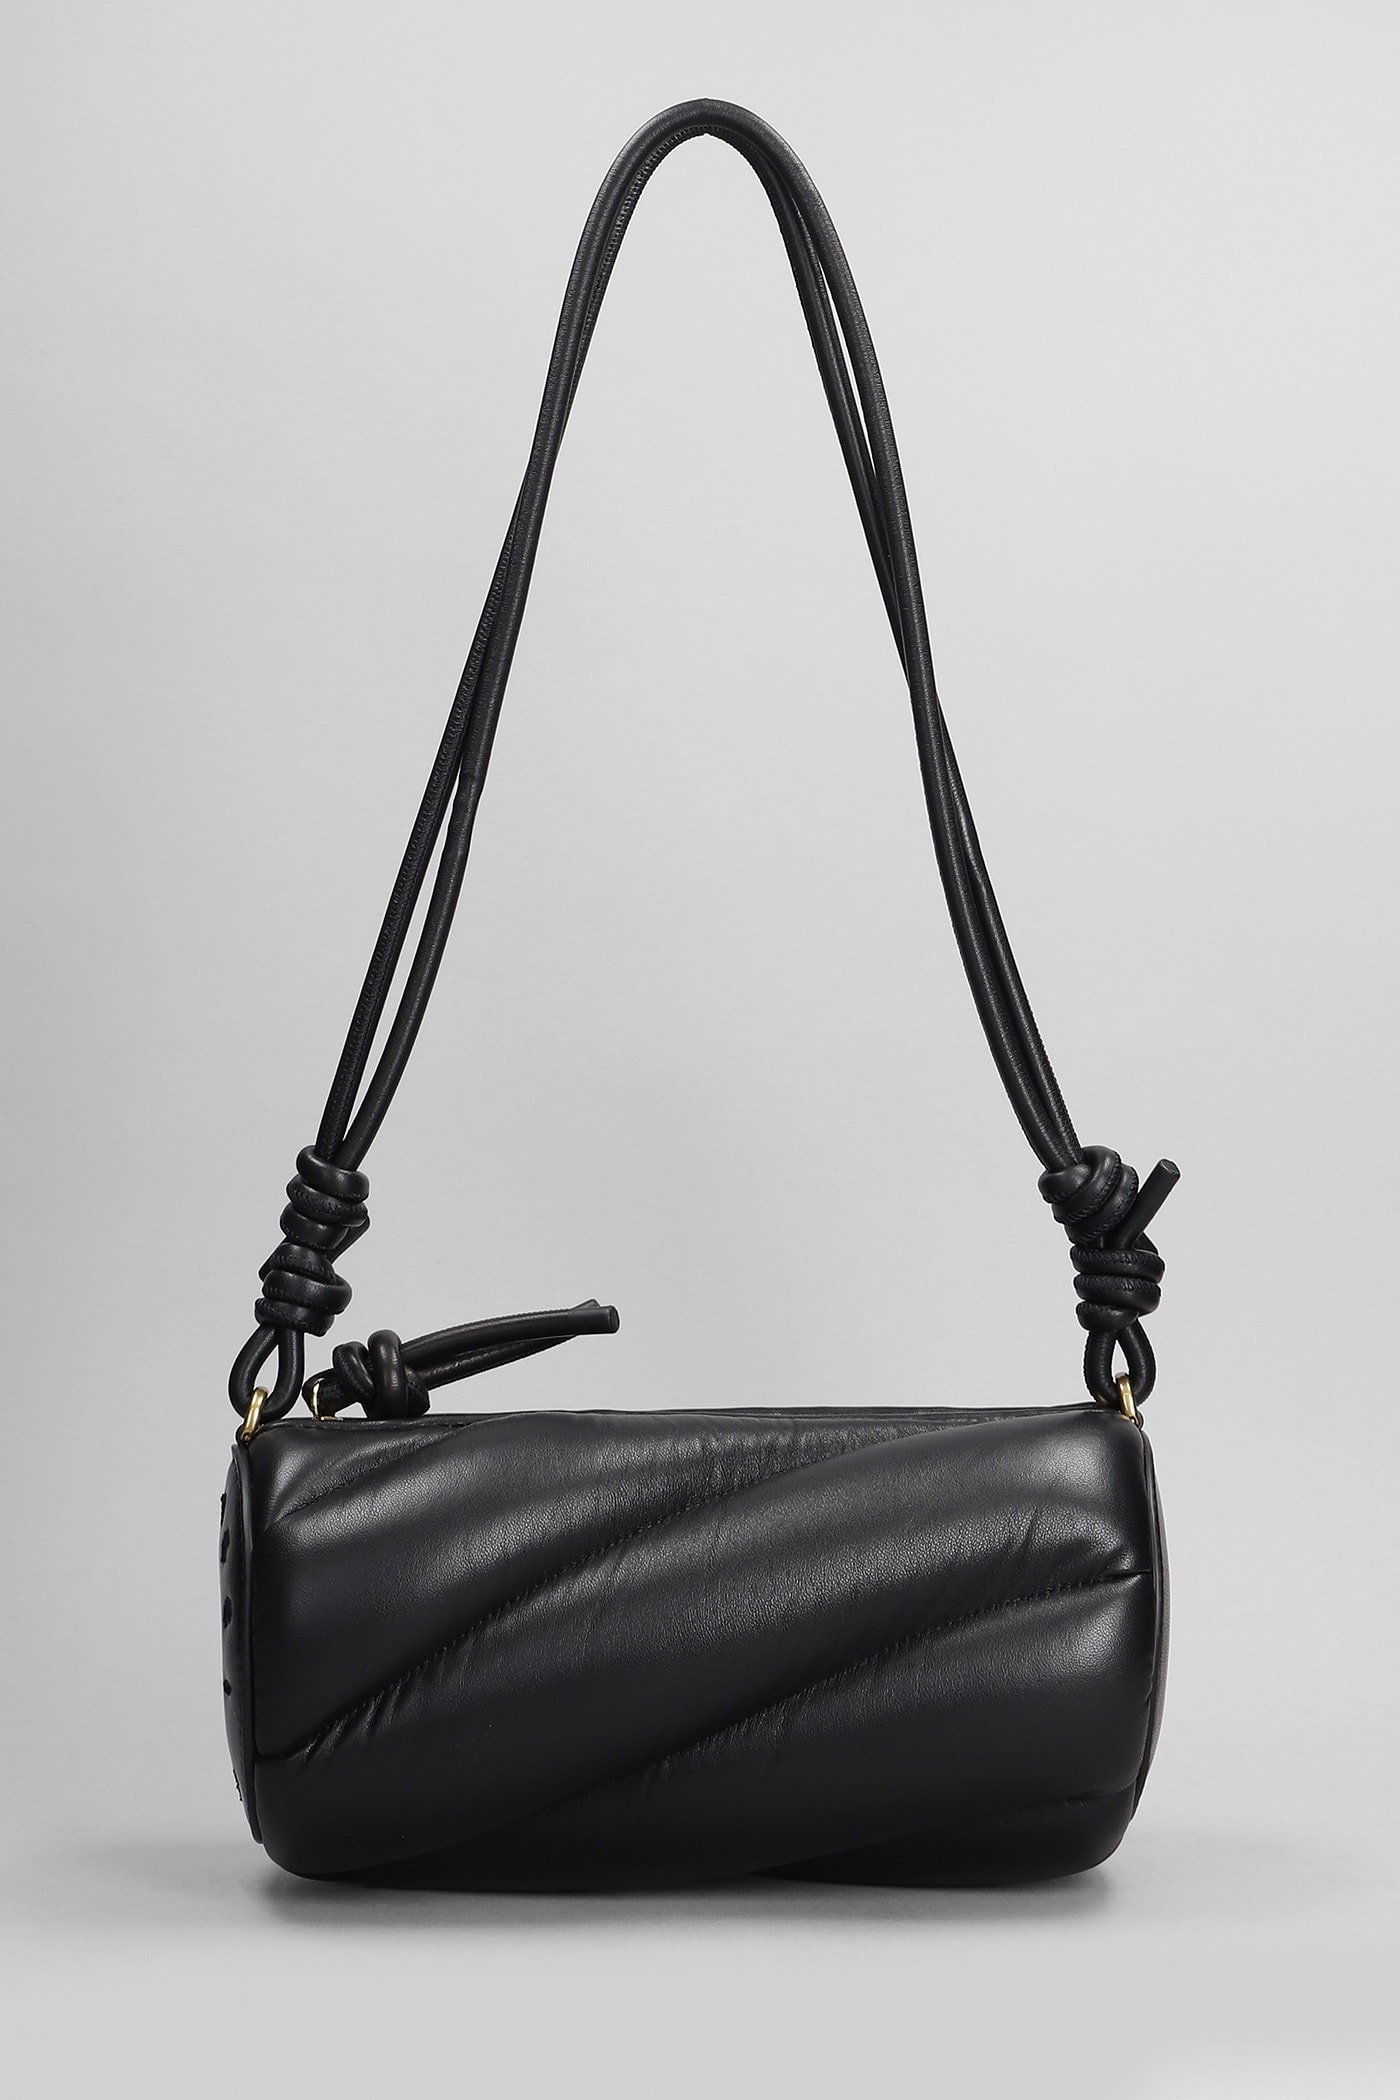 Mella Bag Shoulder Bag In Black Leather